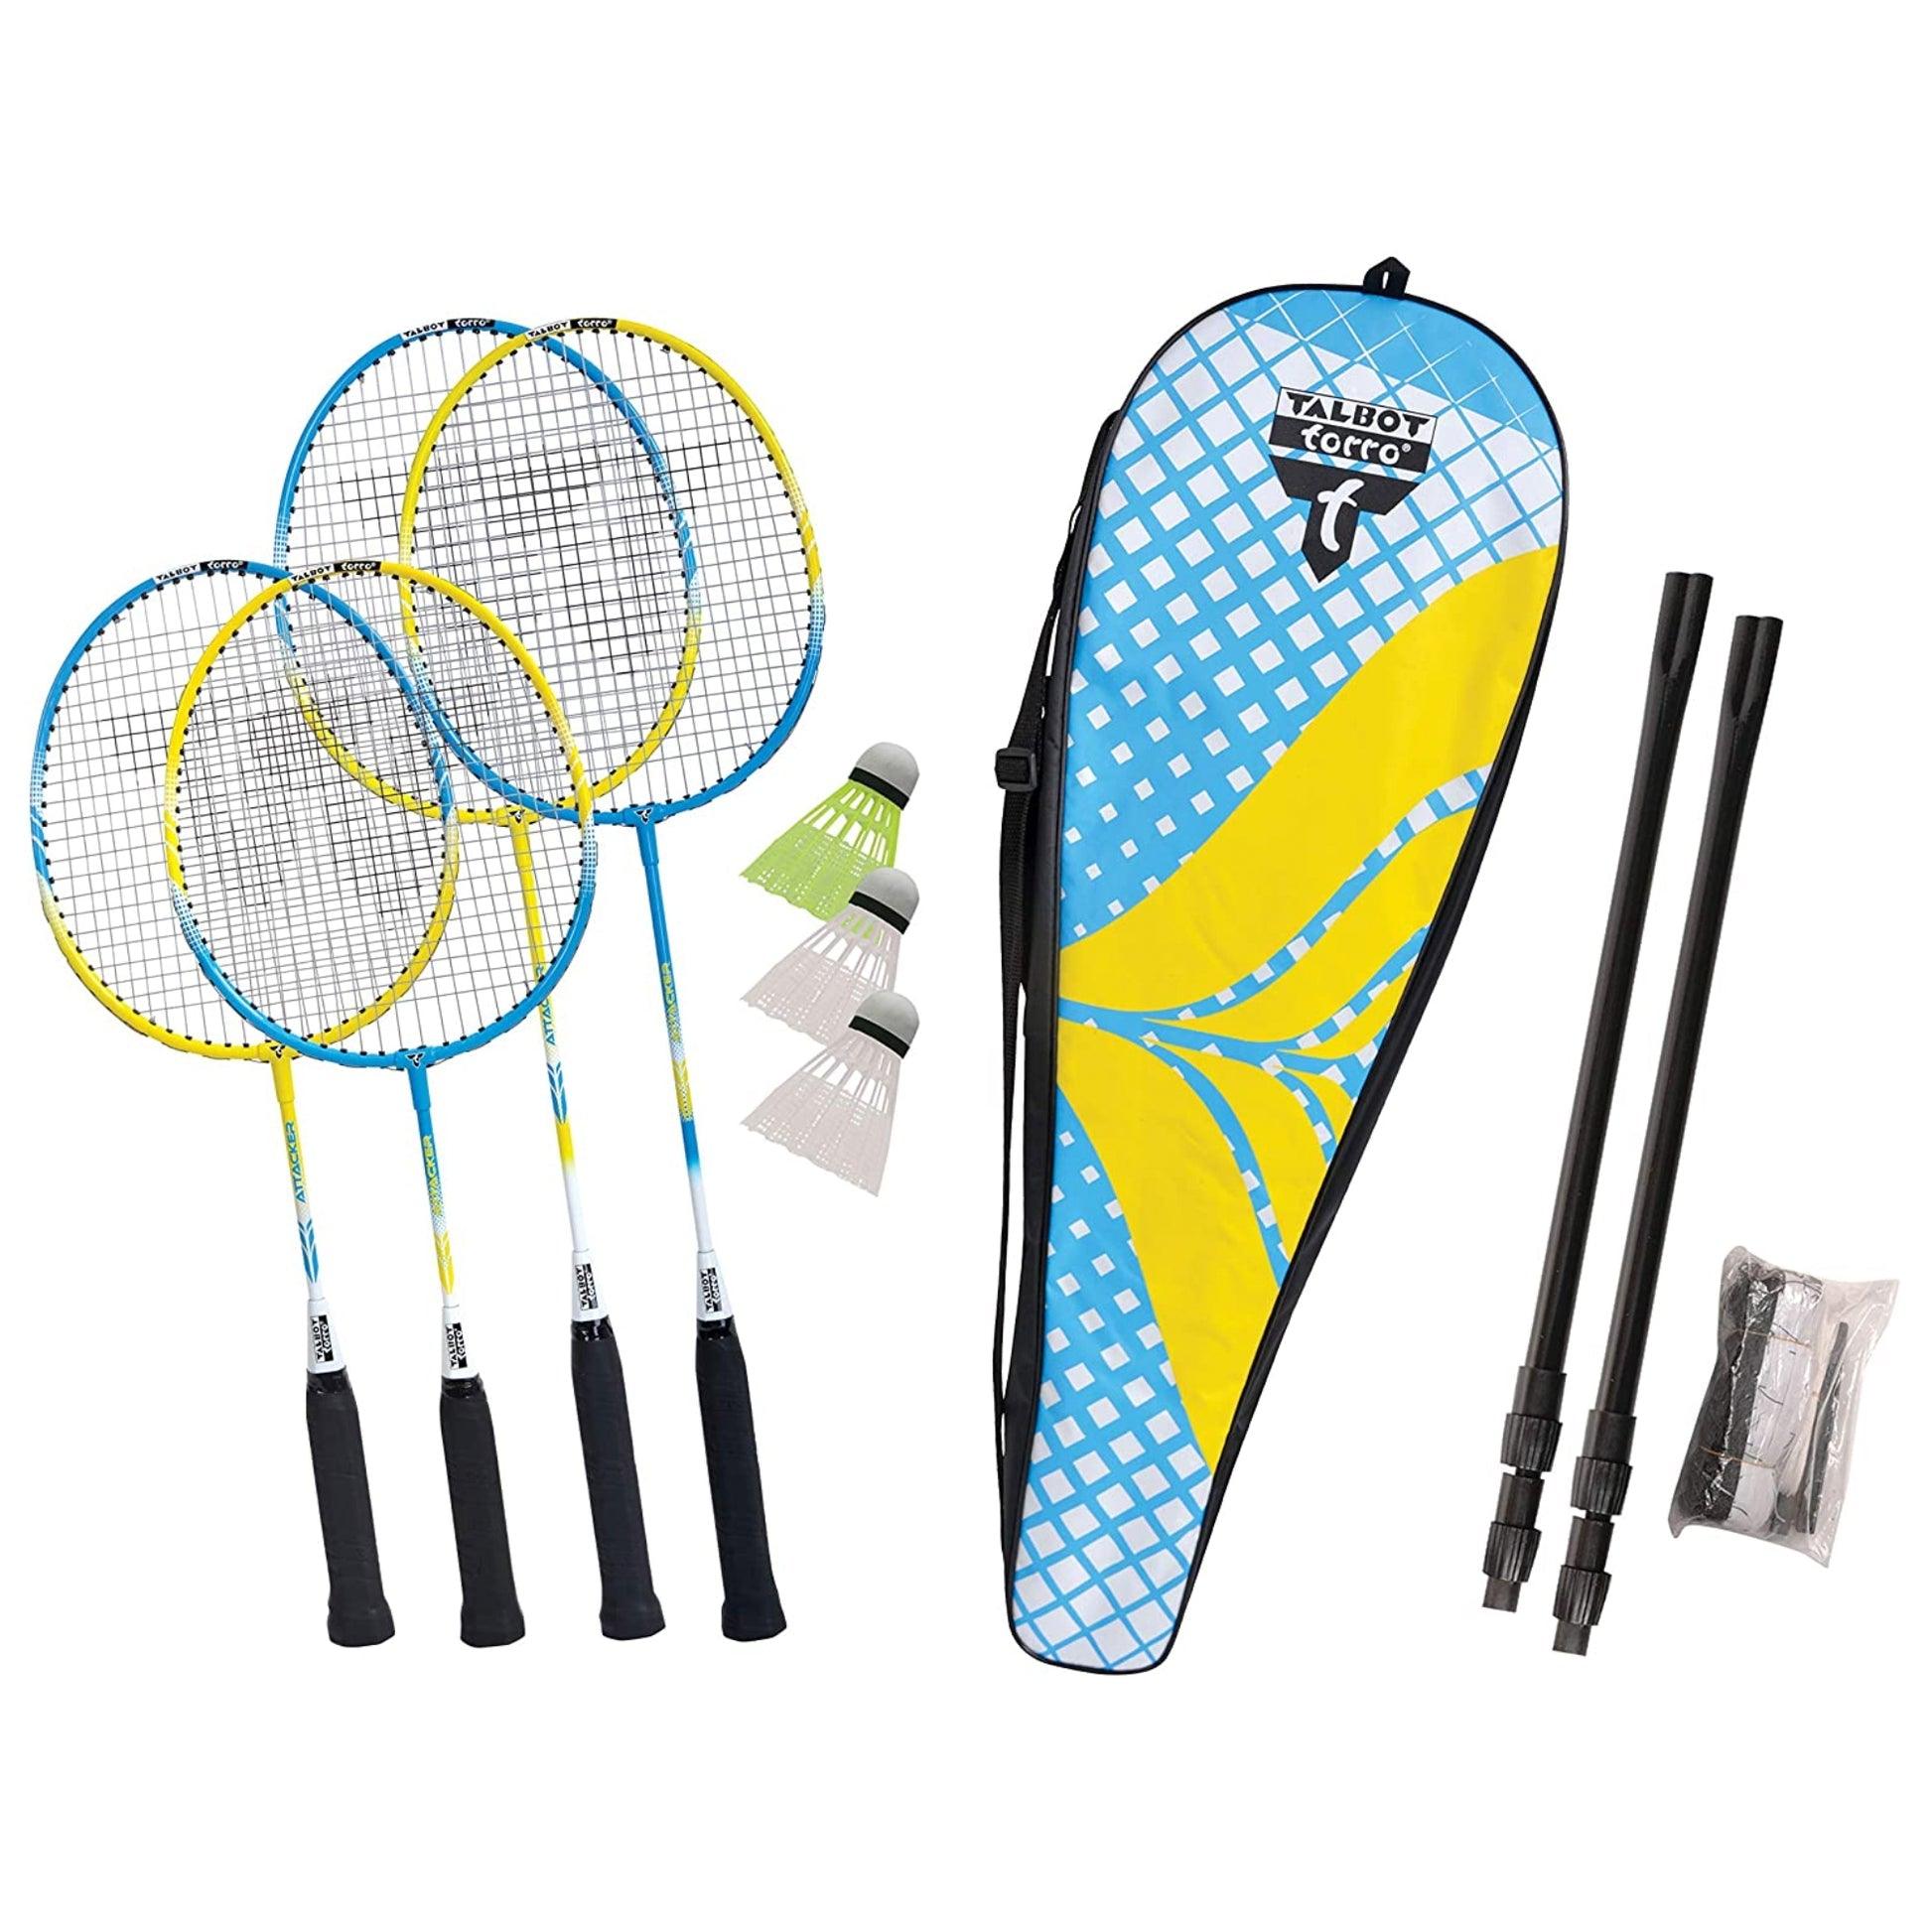 Zestaw do badmintona Family Set - idealny dla całej rodziny | Talbot Torro